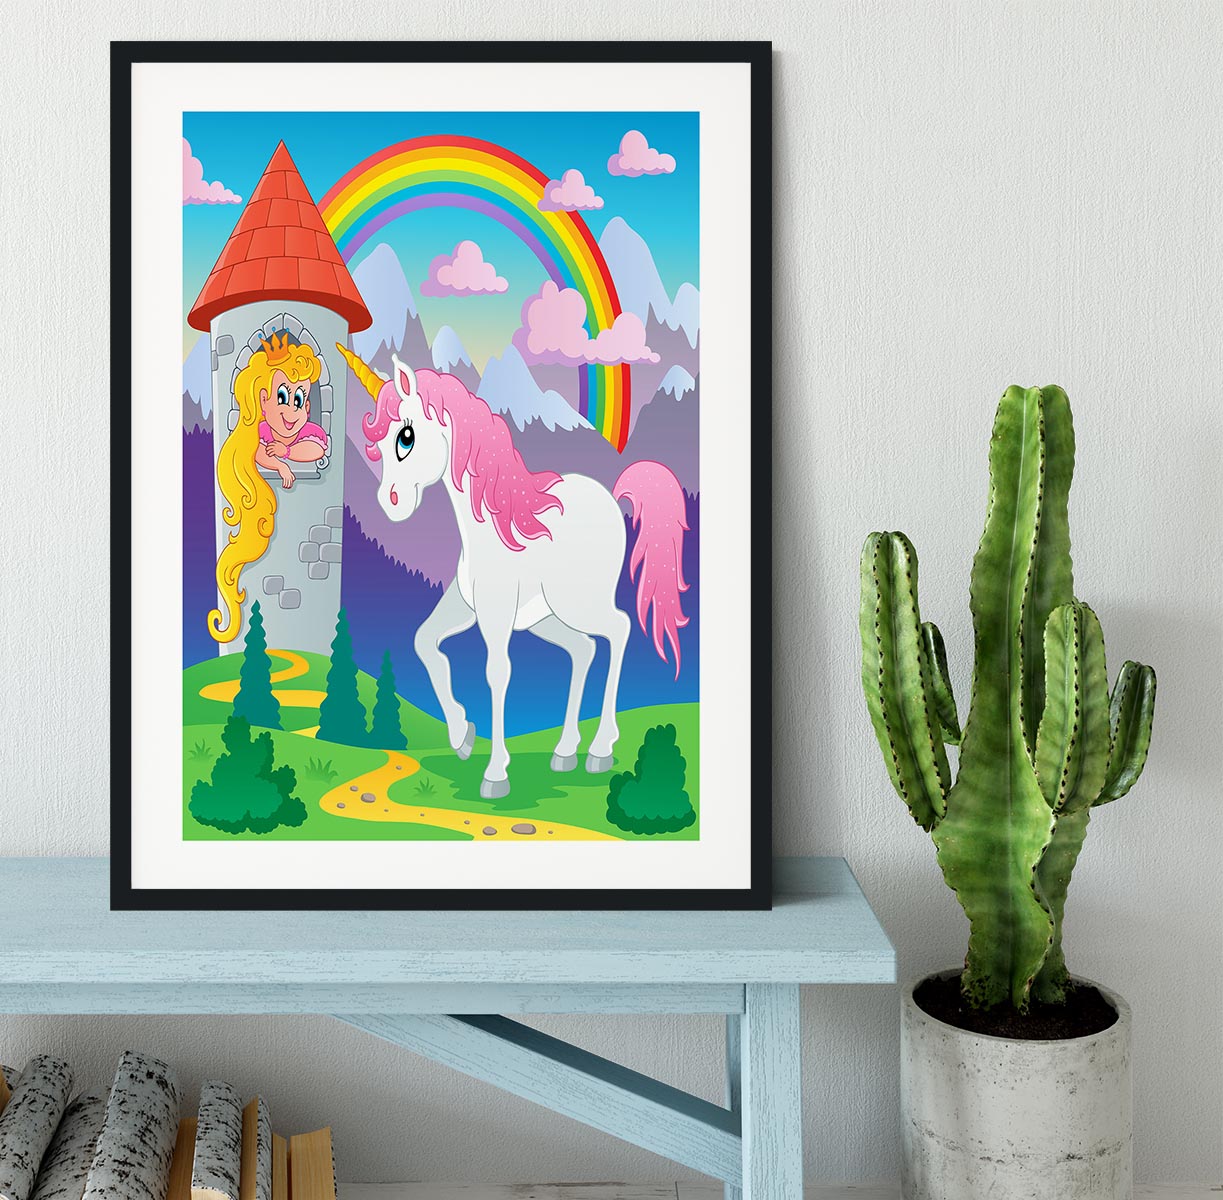 Fairy tale unicorn theme Framed Print - Canvas Art Rocks - 1